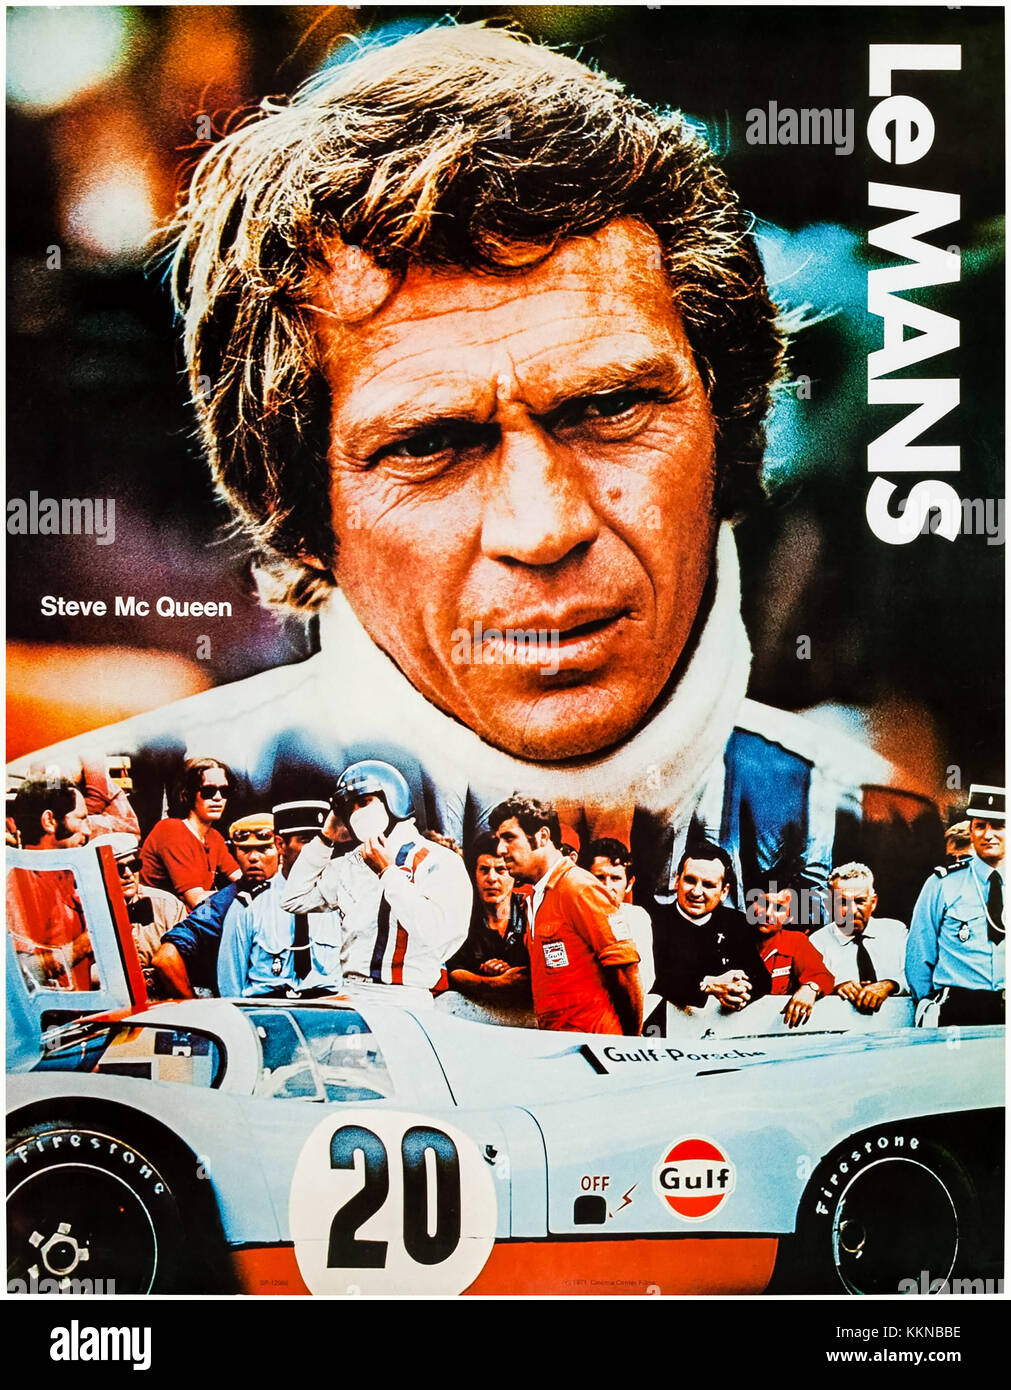 Steve McQueen come Michael Delaney nel Golfo di Team Porsche 917. Golfo poster promozionali tie-in con il film "Le Mans' (1971) diretto da Lee H. Katzin e interpretato da Steve McQueen, Siegfried Rauch e Elga Andersen. Foto Stock